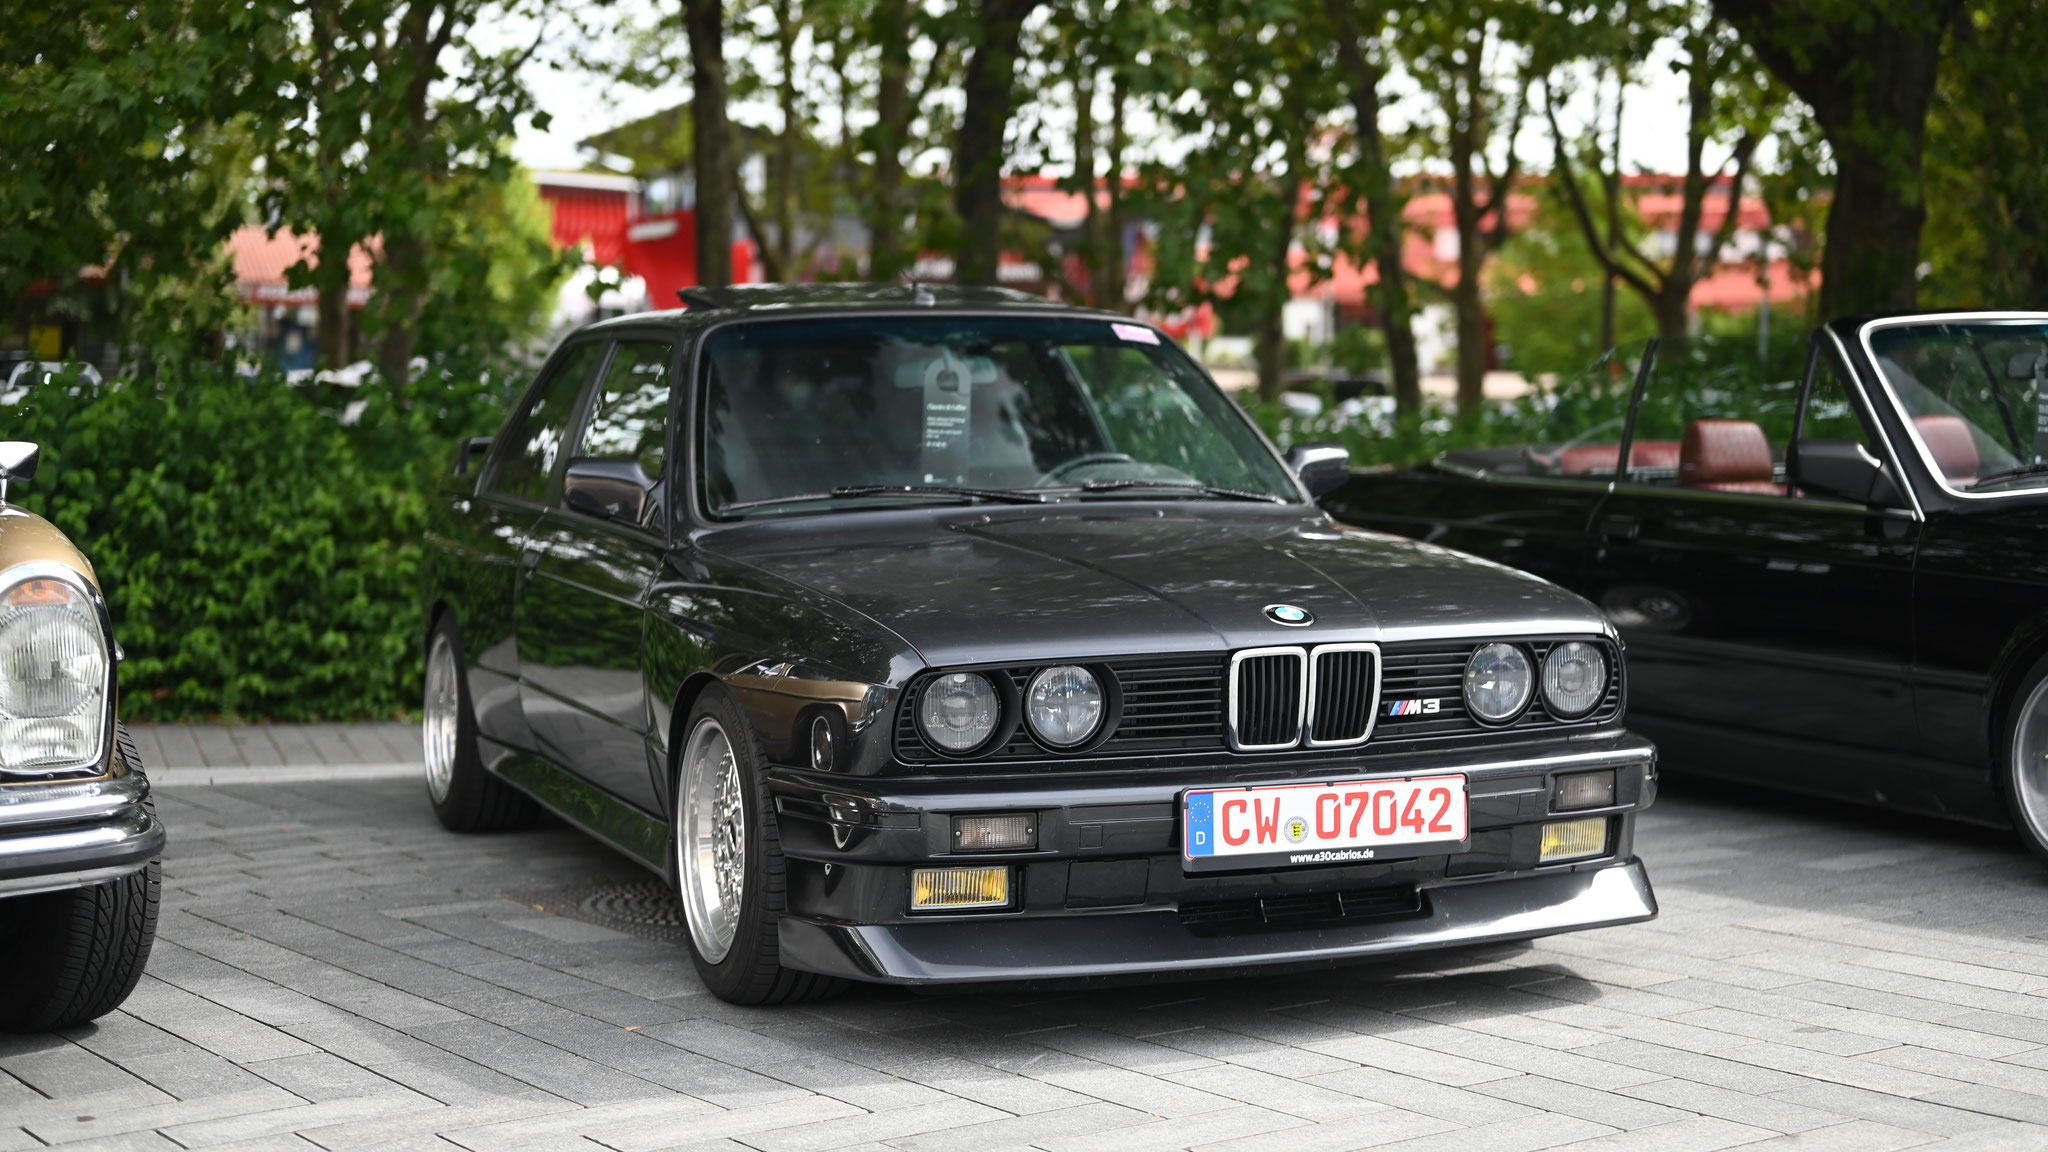 BMW M3 E30 - CW-07042